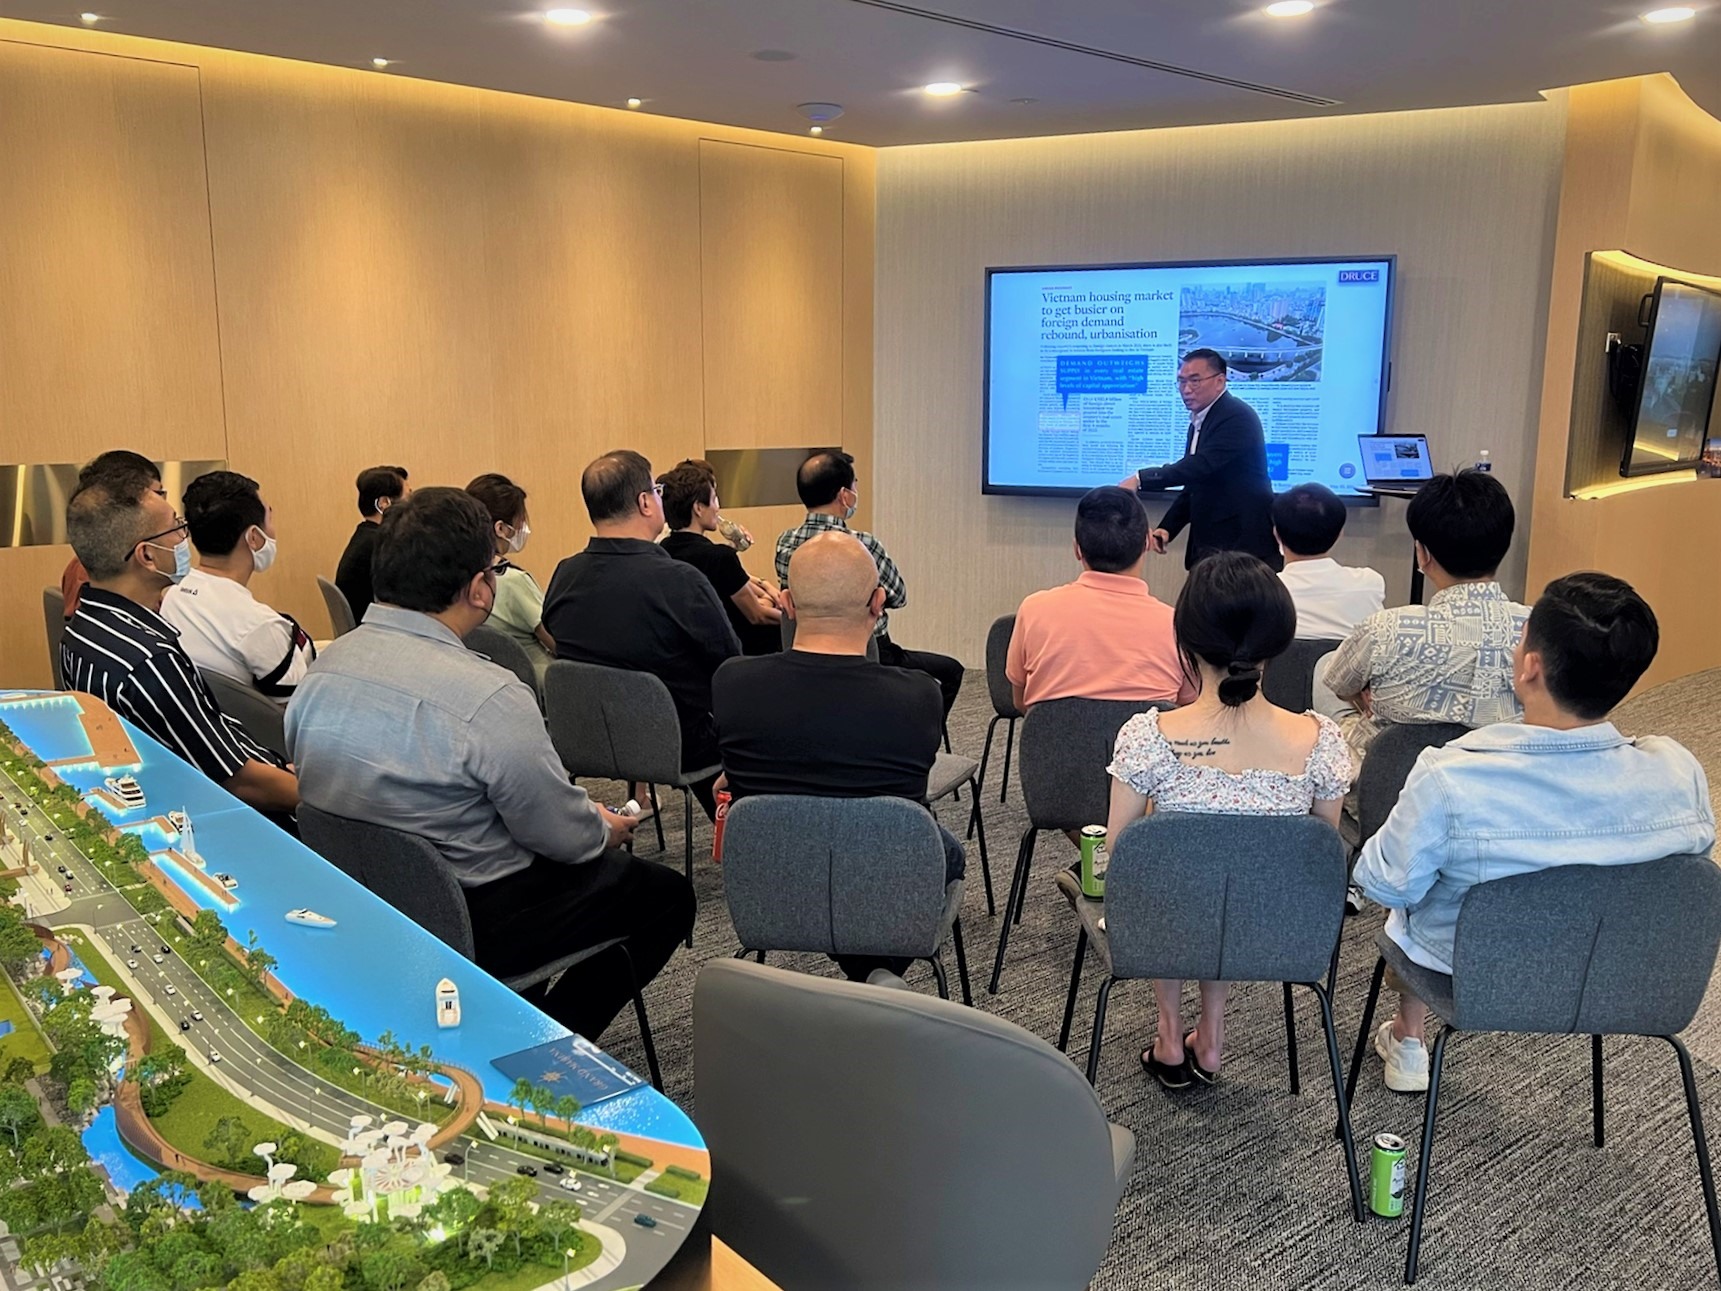 Khách hàng quốc tế ấn tượng mạnh với hai dự án căn hộ hàng hiệu tại Việt Nam. Hình ảnh từ một trong những phiên tư vấn VIP tổ chức tại Singapore ngày 24 và 25.9.